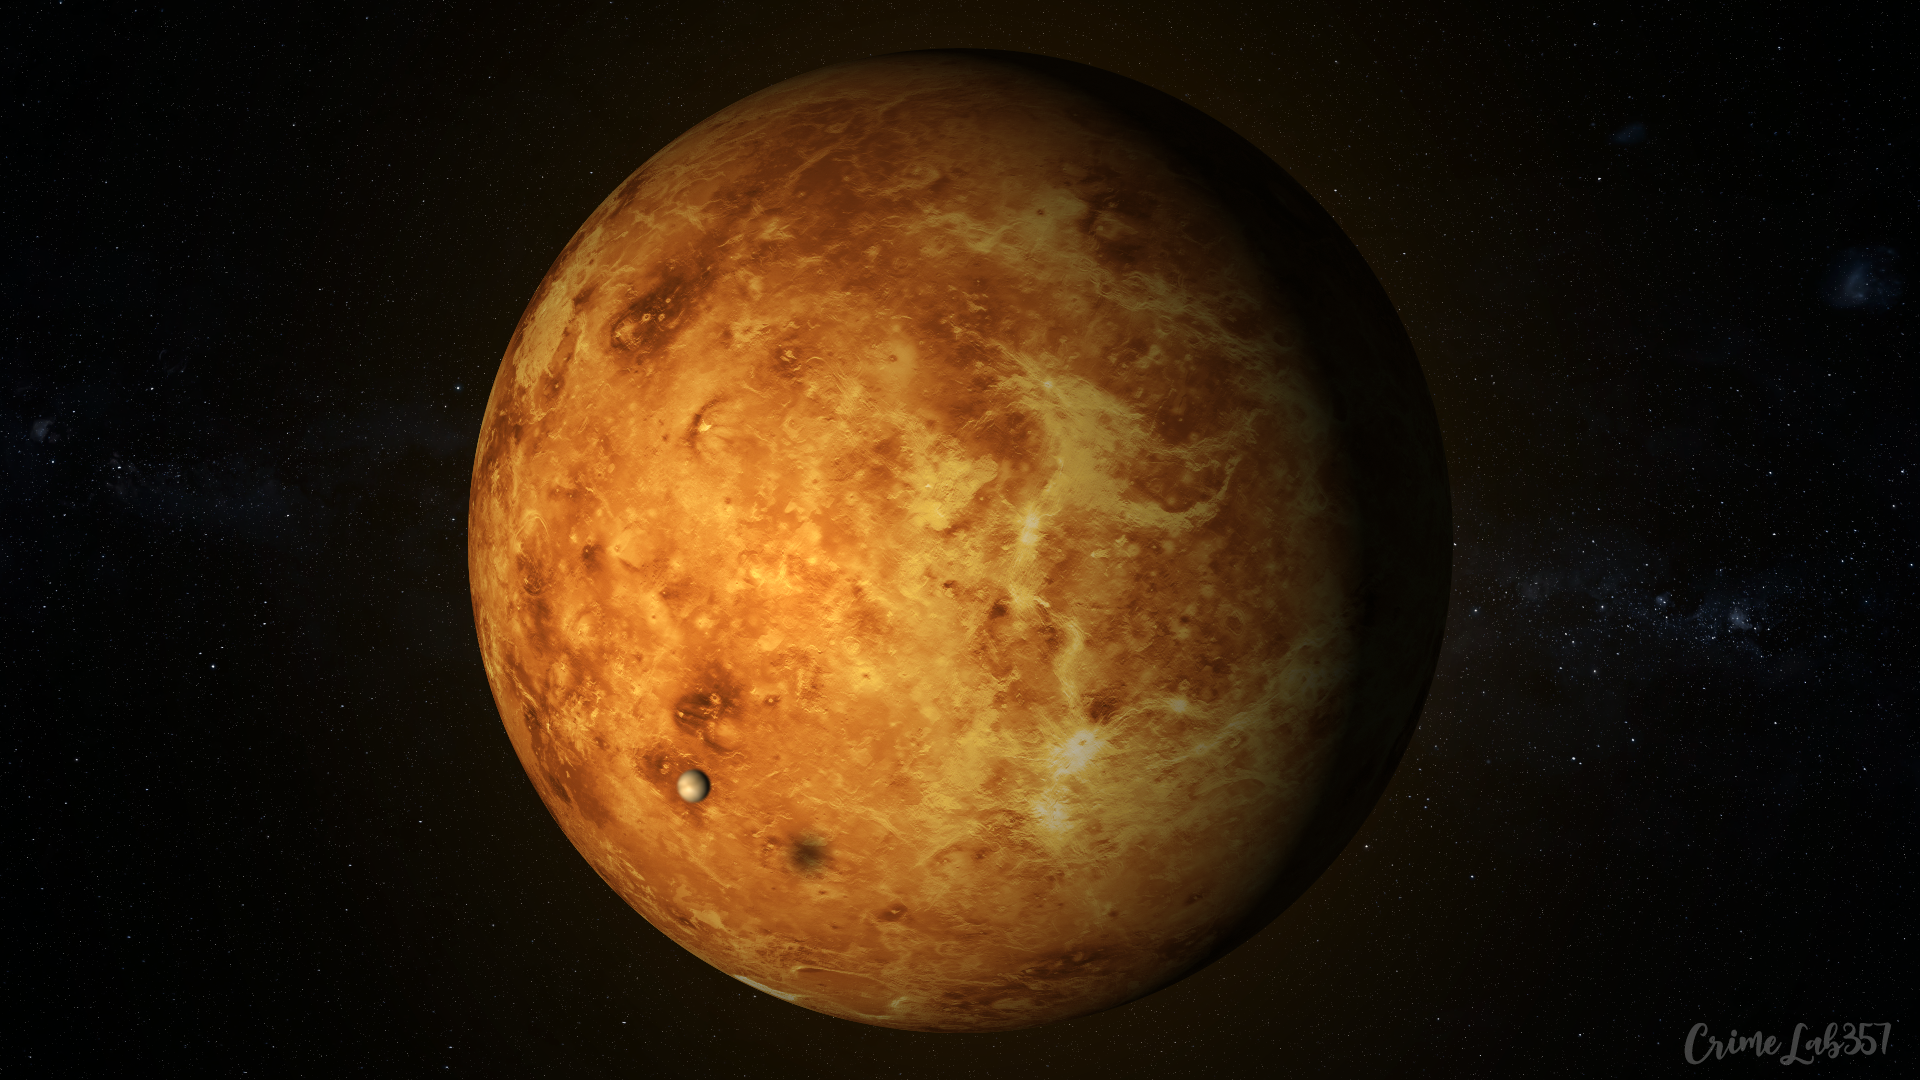 General 1920x1080 Venus planet watermarked space